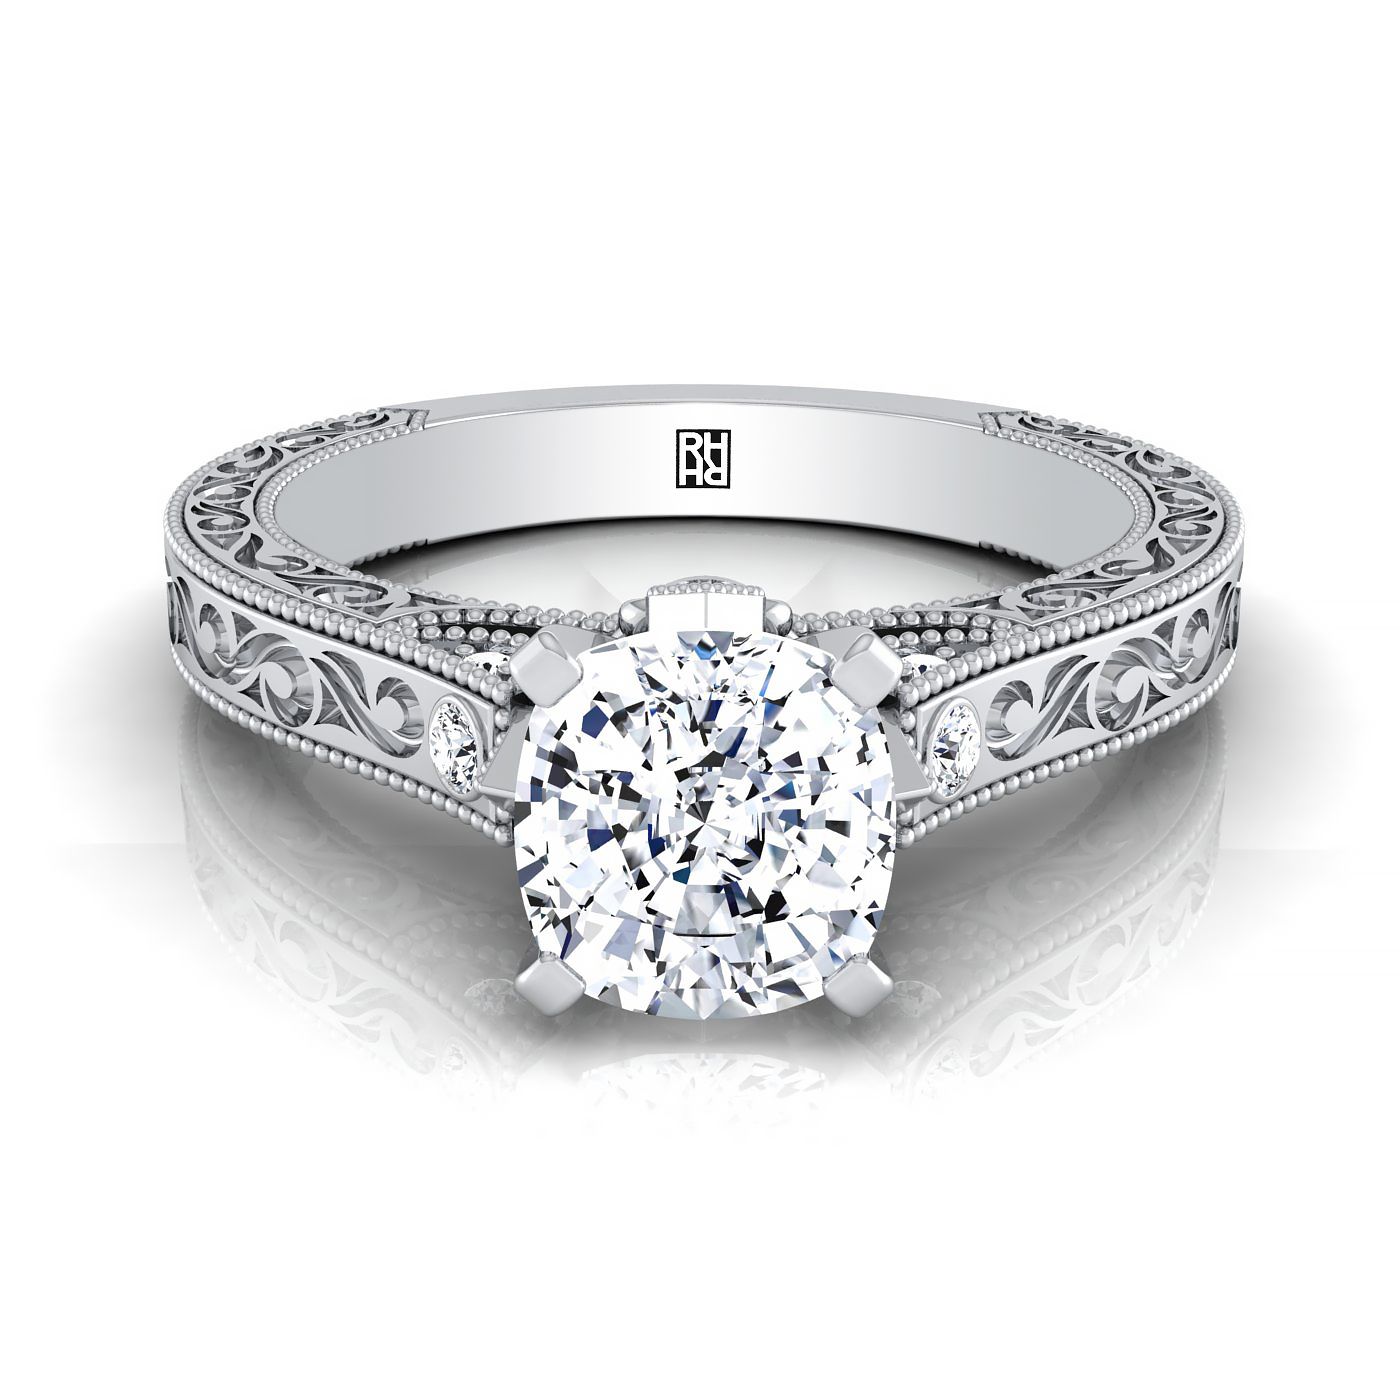 แหวนหมั้นทองคำขาว 18K เบาะเพชรละเอียดอ่อนเน้นโบราณมือแกะสลักแหวนหมั้น -1/10ctw